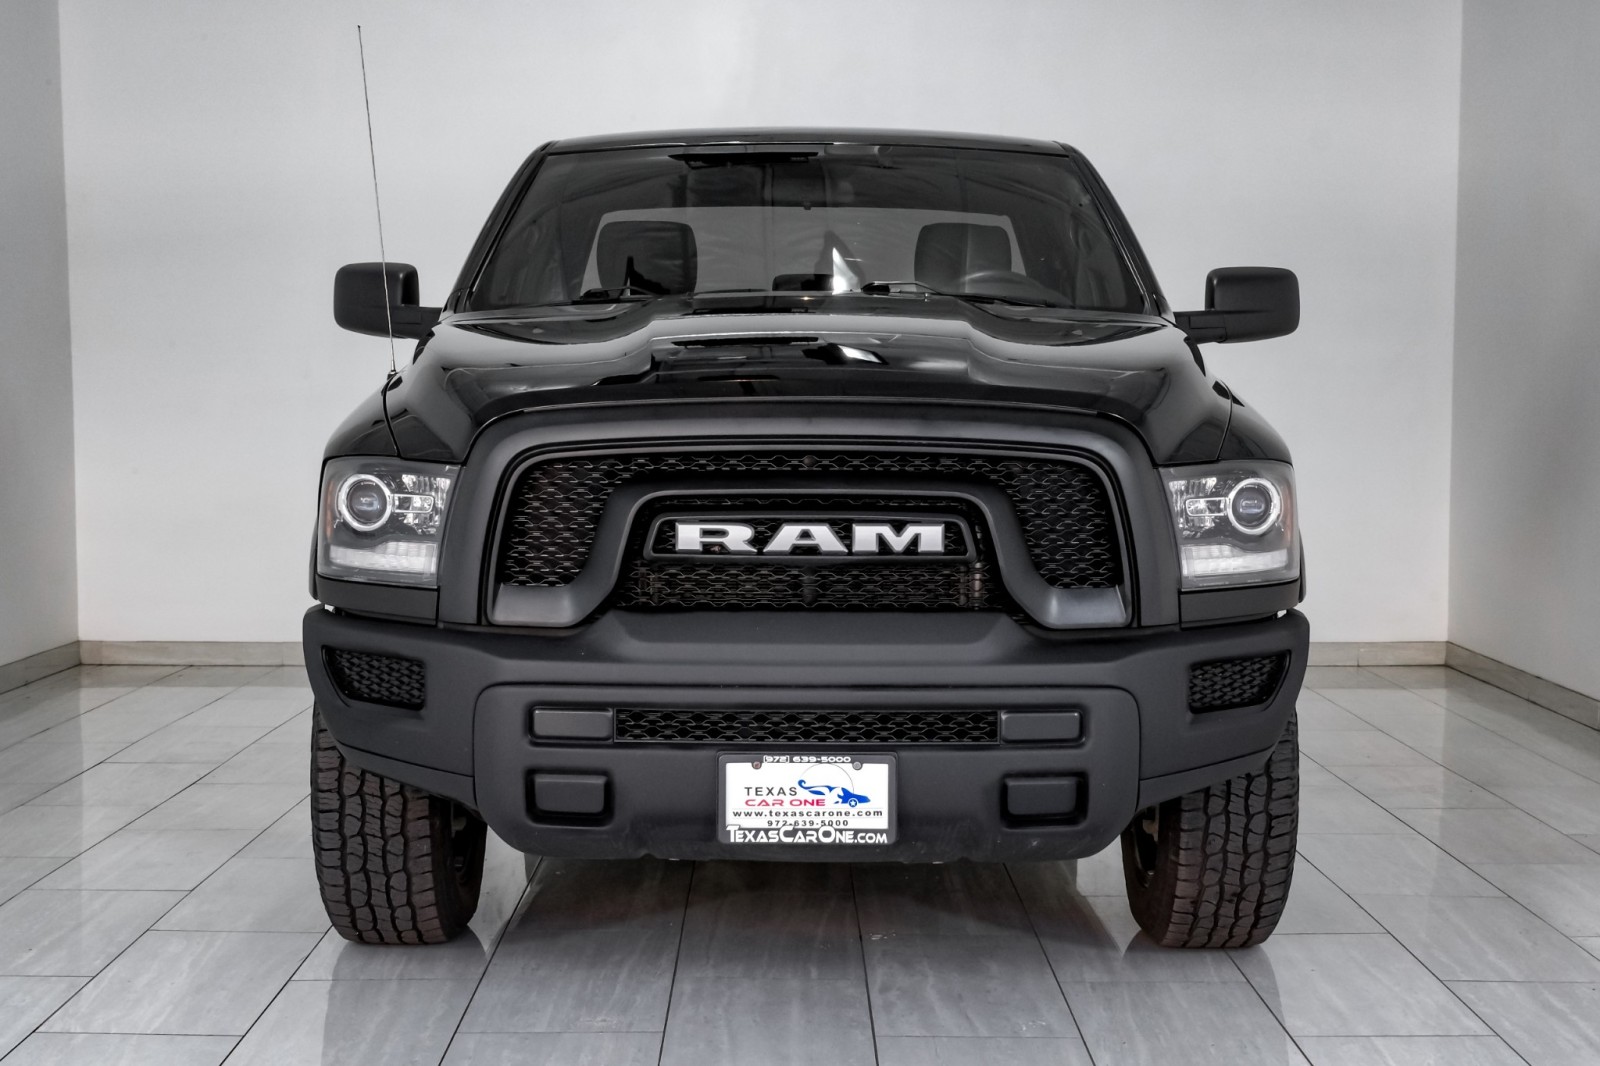 2021 Ram 1500 SLT QUAD CAB 4WD AUTOMATIC REAR CAMERA BLUETOOTH B 5